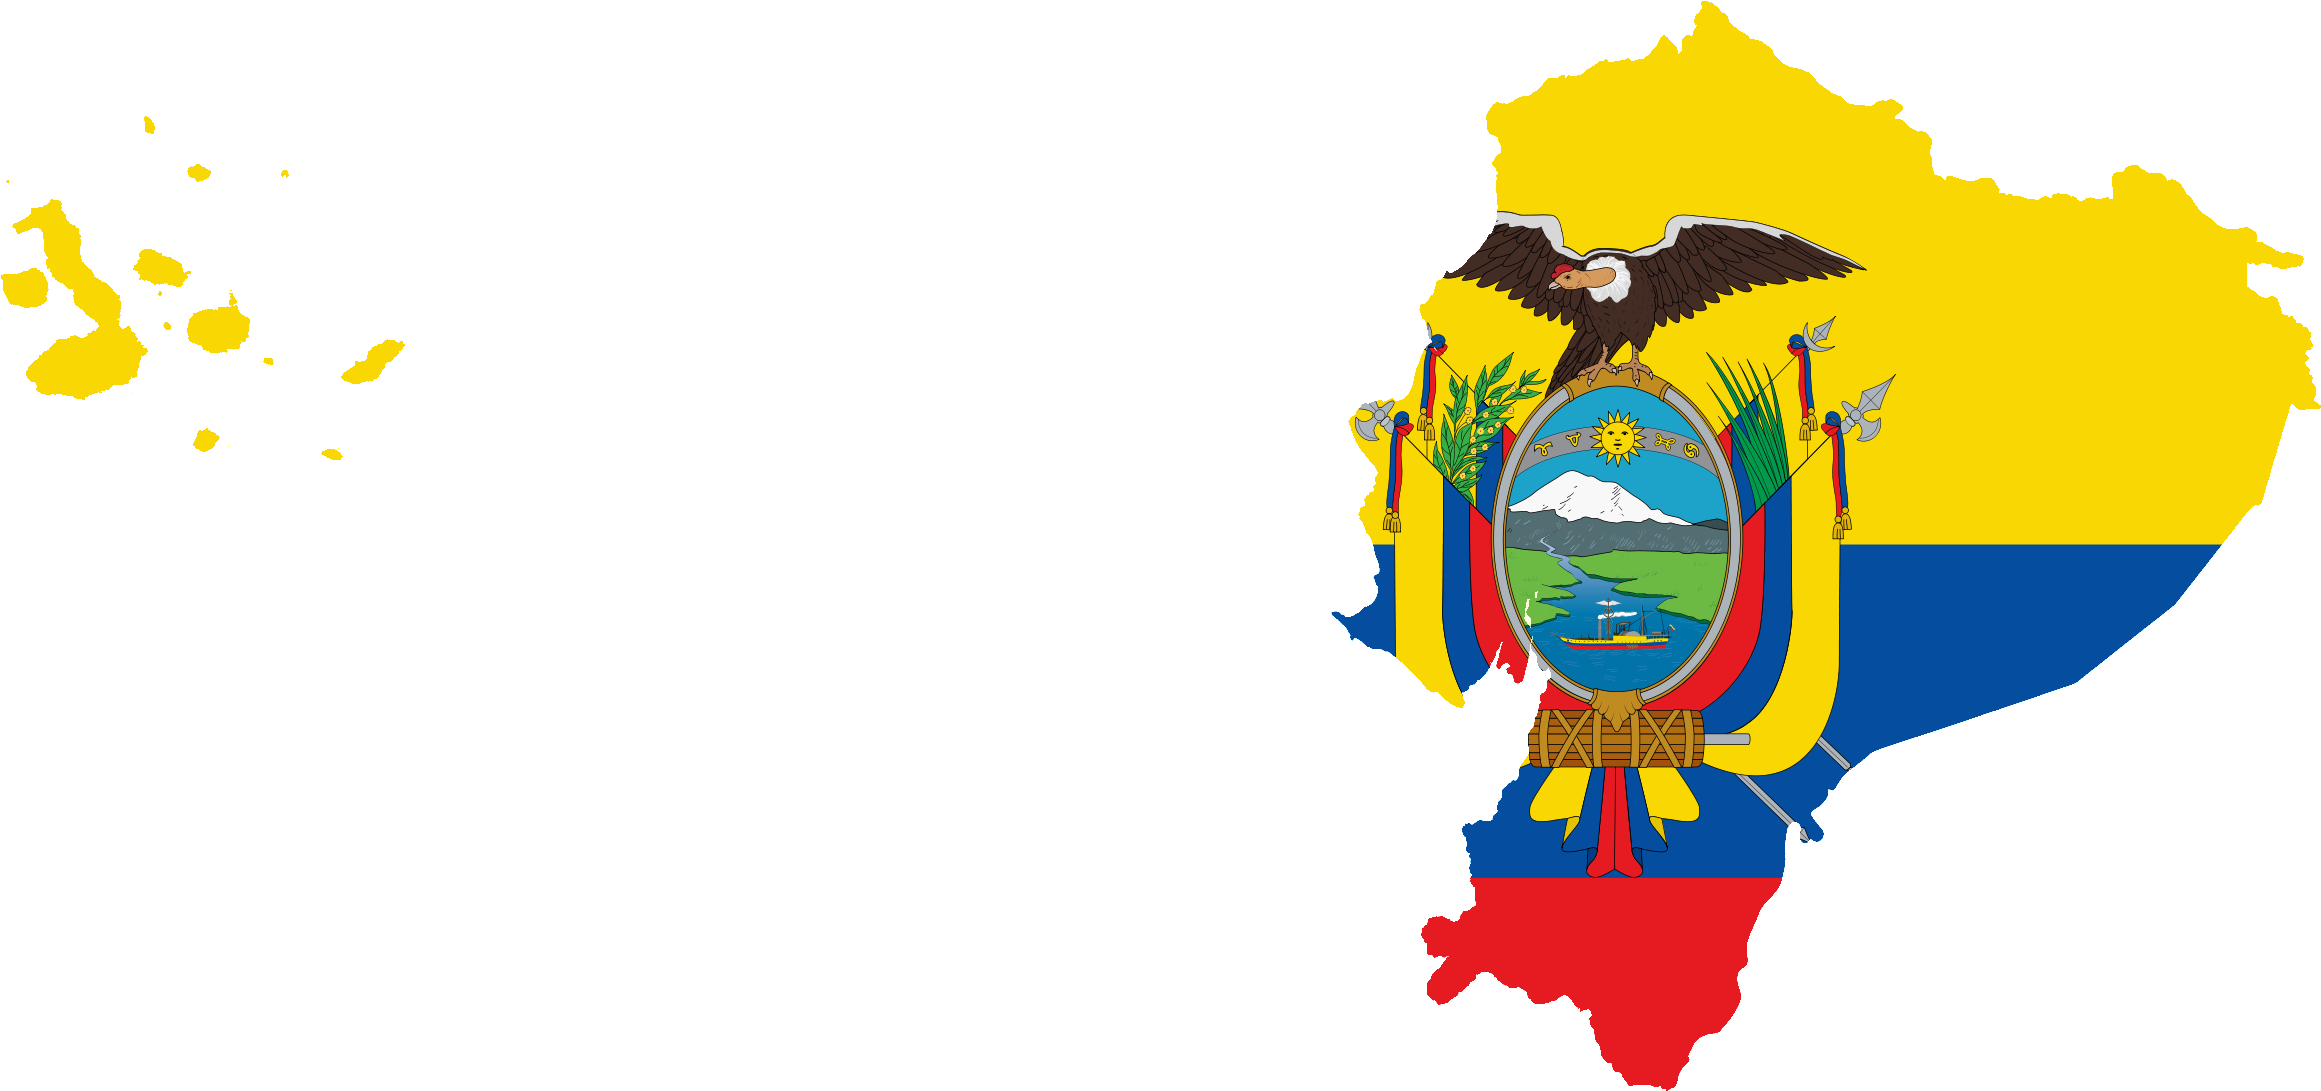 Flag Map Of Ecuador With Galapagos Islands - Galapagos Islands Map Png (2353x1094), Png Download